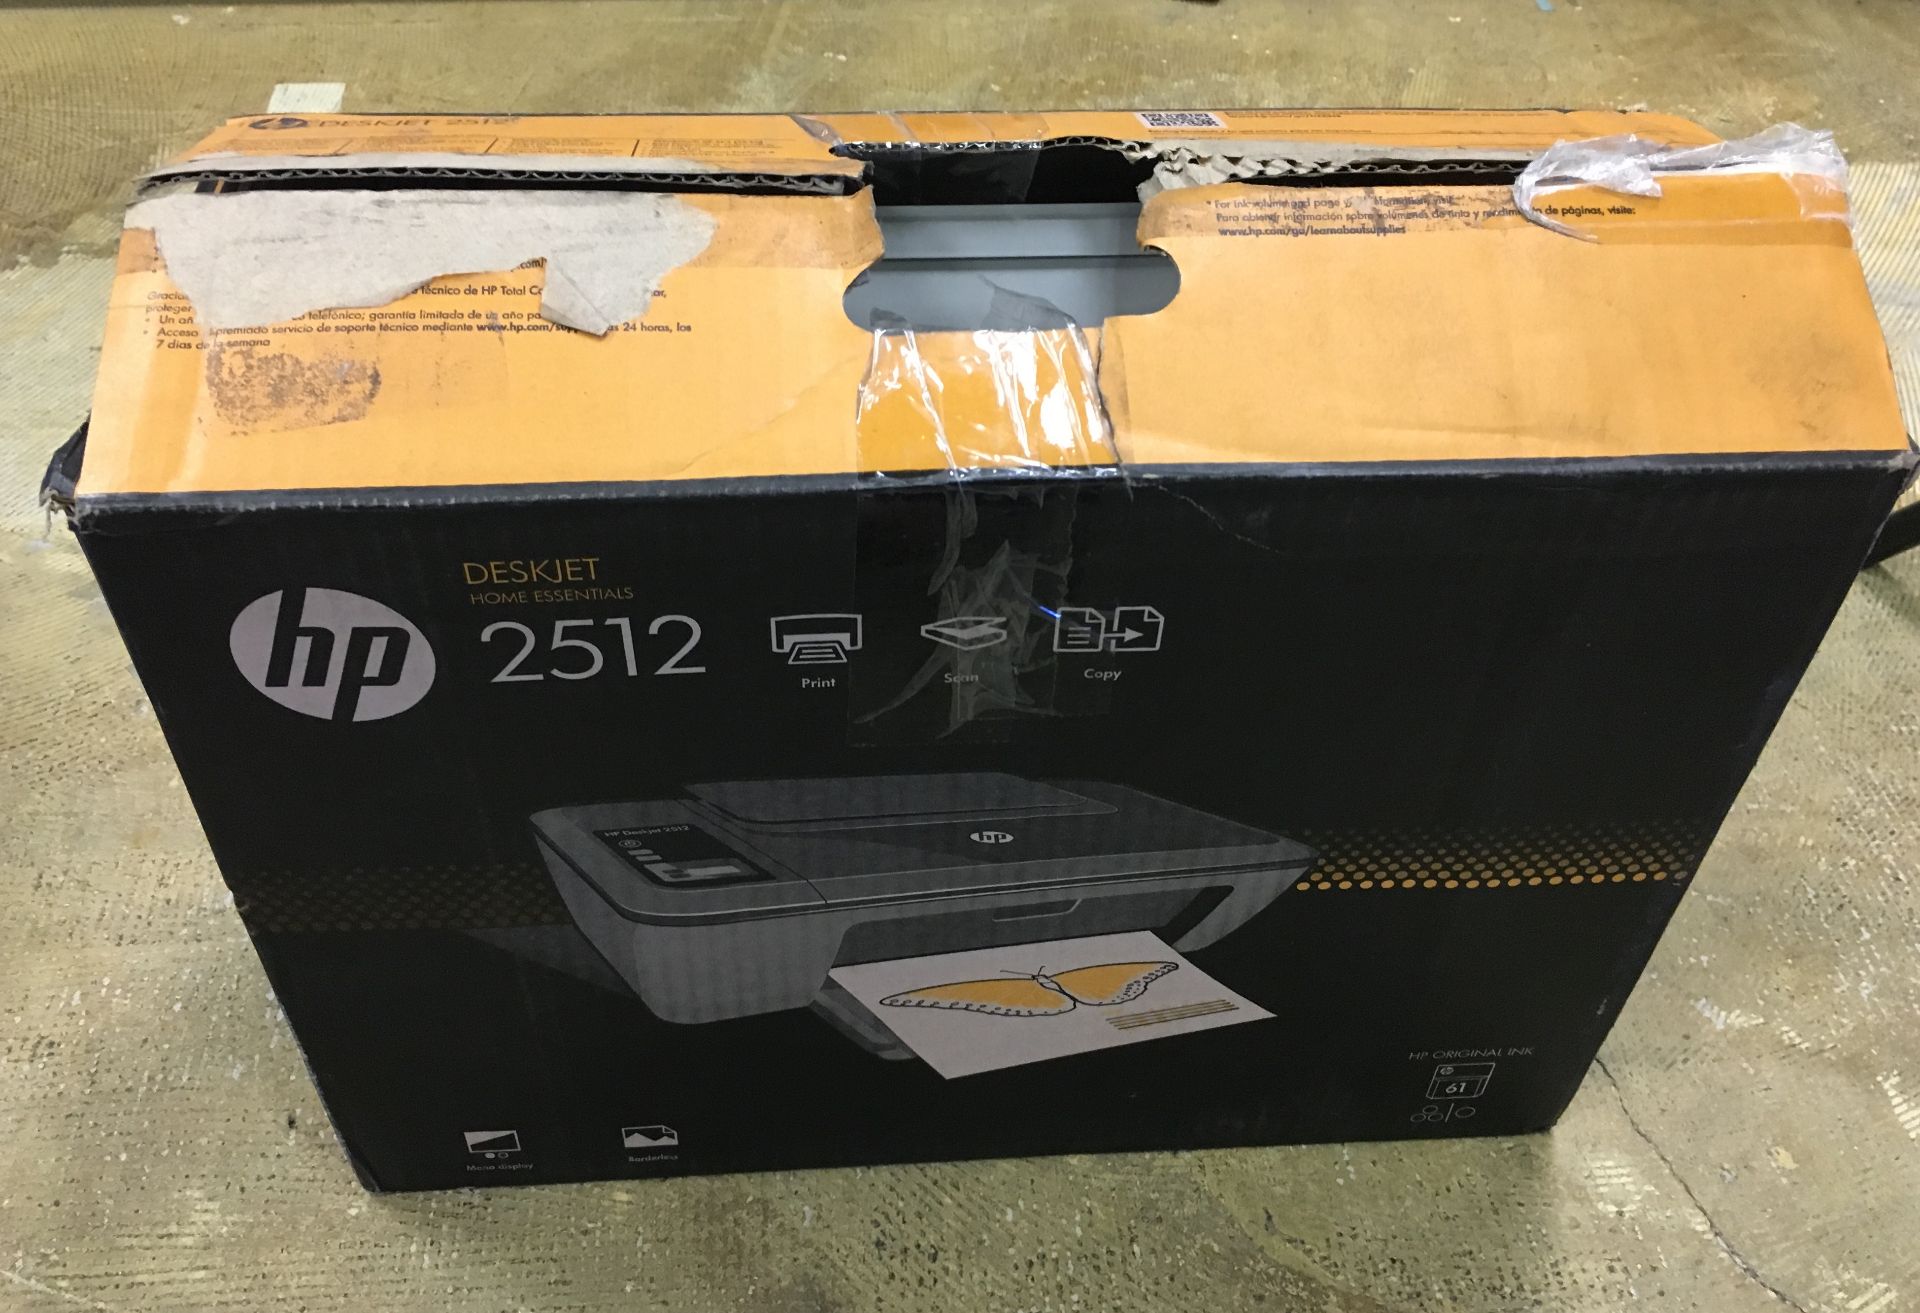 HP2512 PRINTER IN BOX